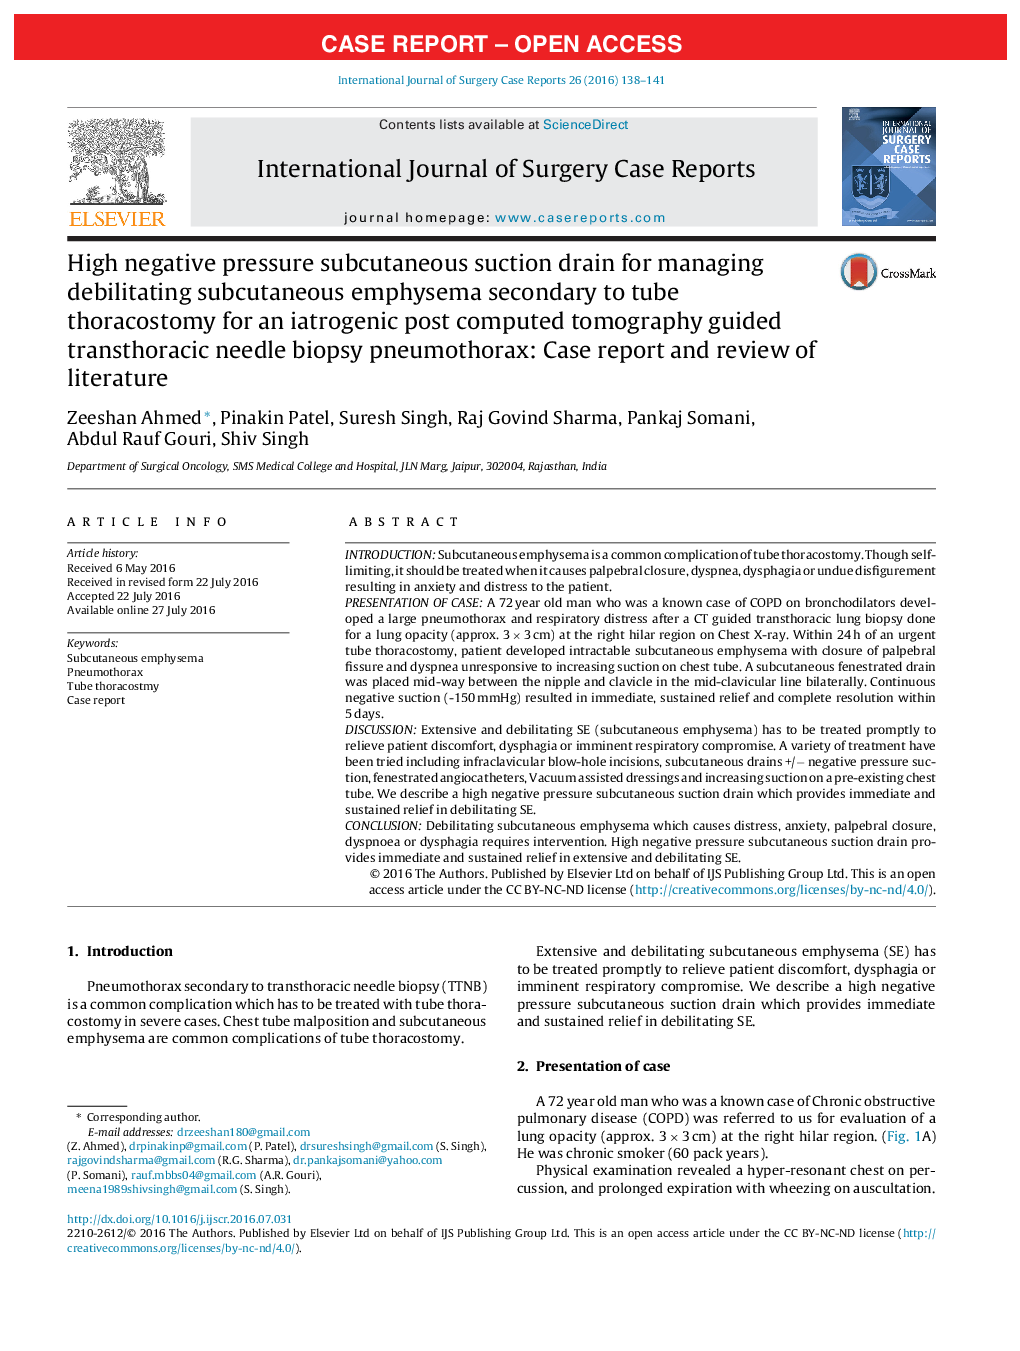 تخلیه ساکشن زیر جلدی منفی برای مدیریت کمخونی آمیسیام زیر جلدی به دنبال توراکوستومی لوله ای برای یک توموگرافی کامپیوتری پس از زایمان ایدروژنی تحت عنوان پنوموتوراکس بیوپسی سوزن ترموستاکاریک راهنمای: گزارش مورد و بررسی ادبیات 